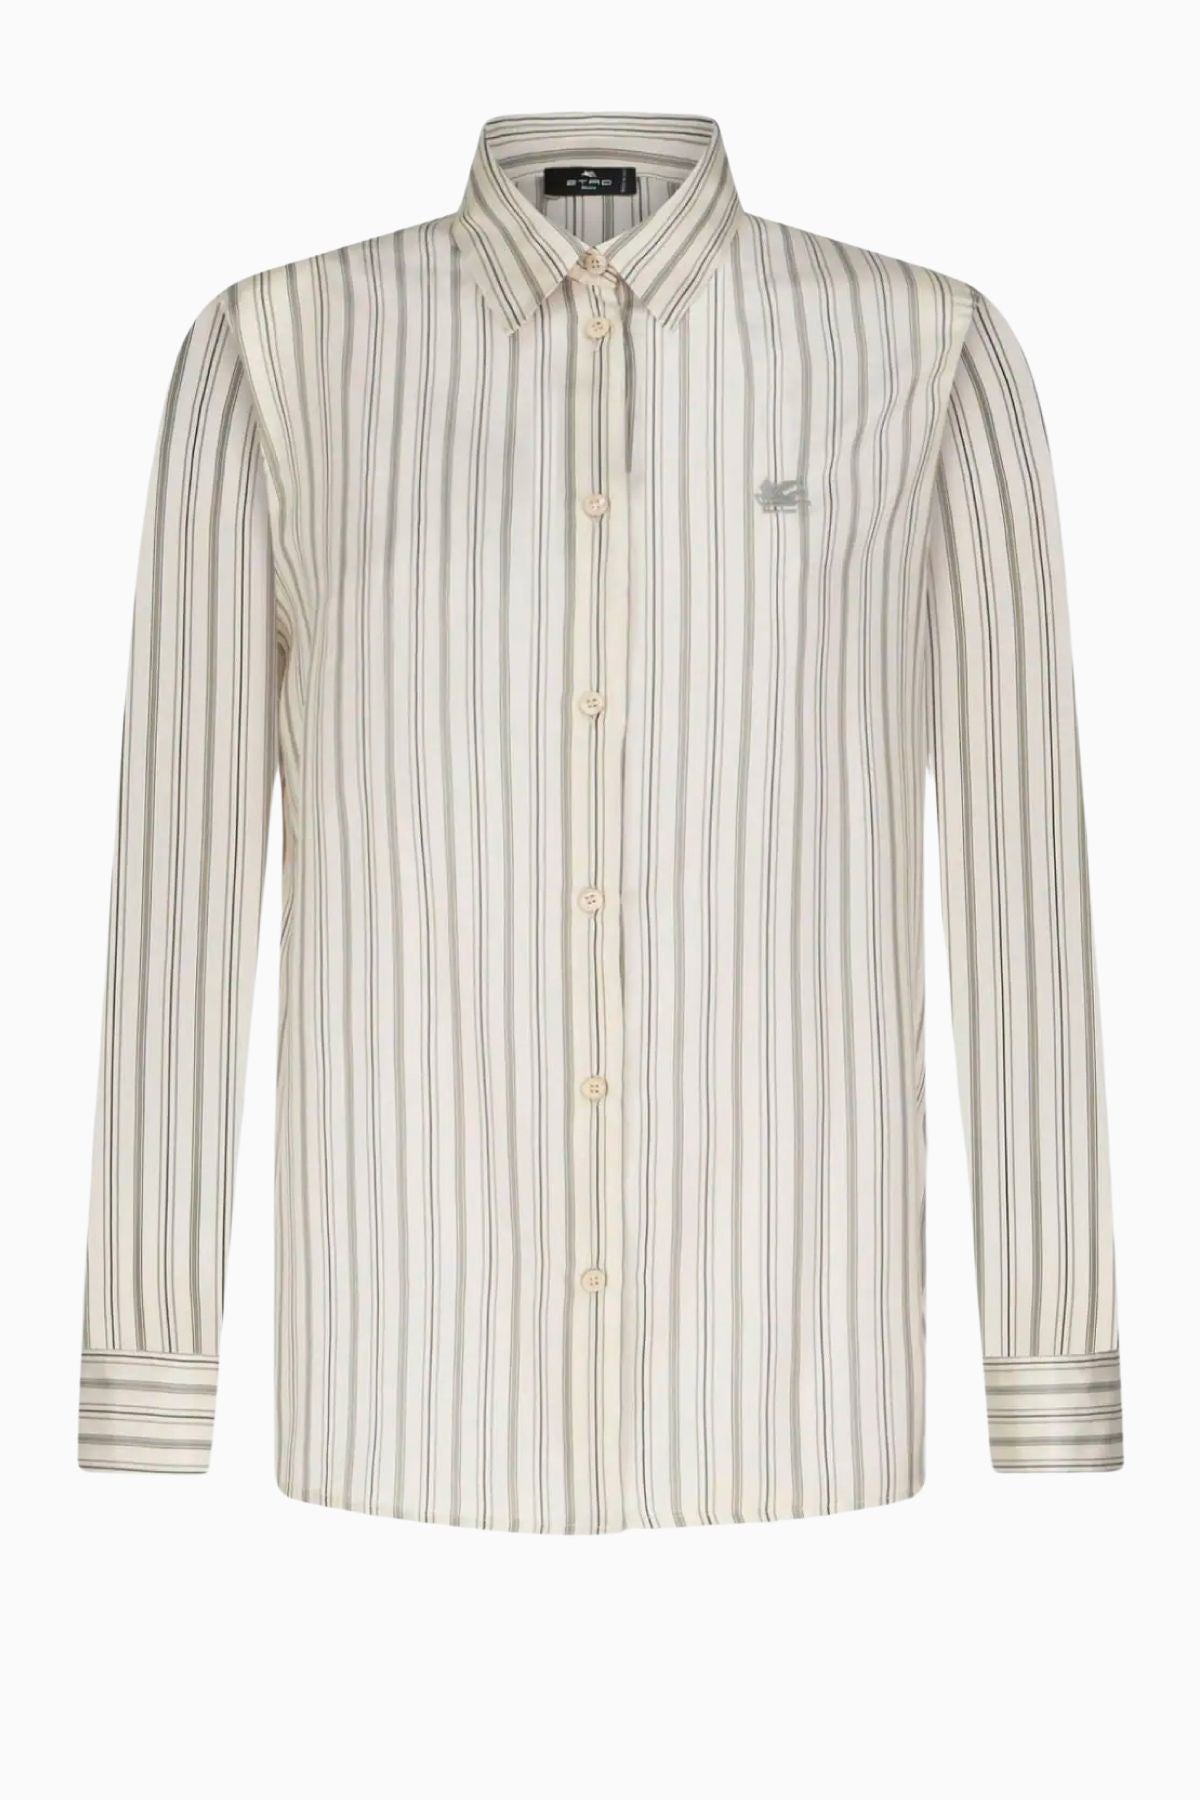 Etro Silk Stripe Shirt - White Grey